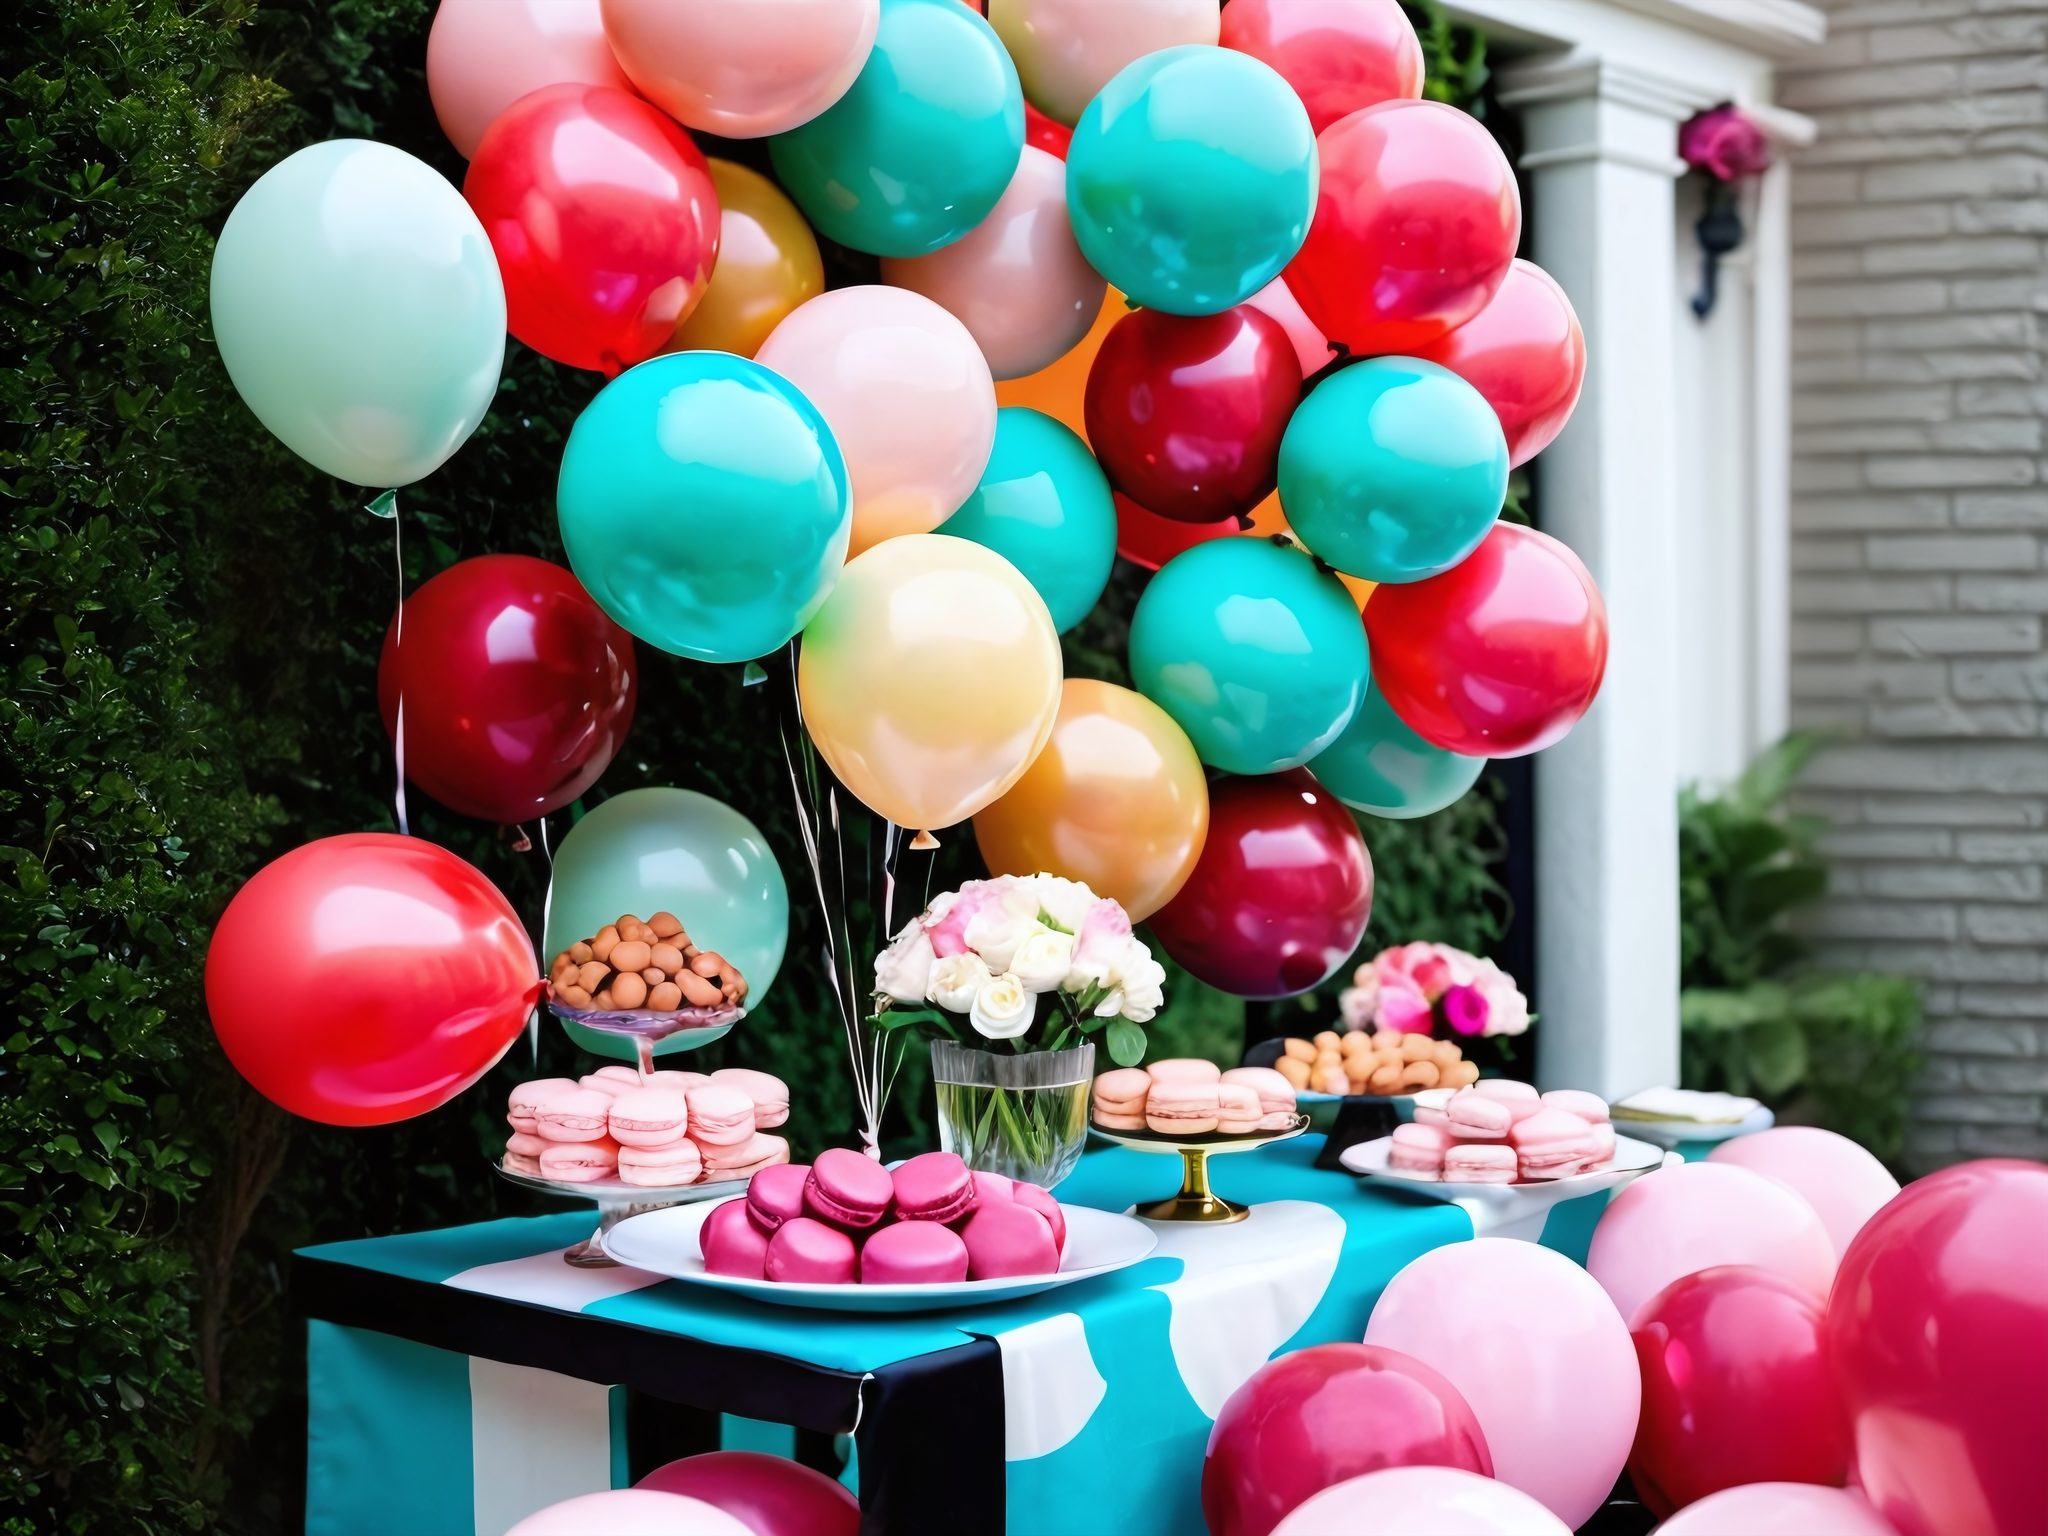 Blooms, Balloons, & Macaroons